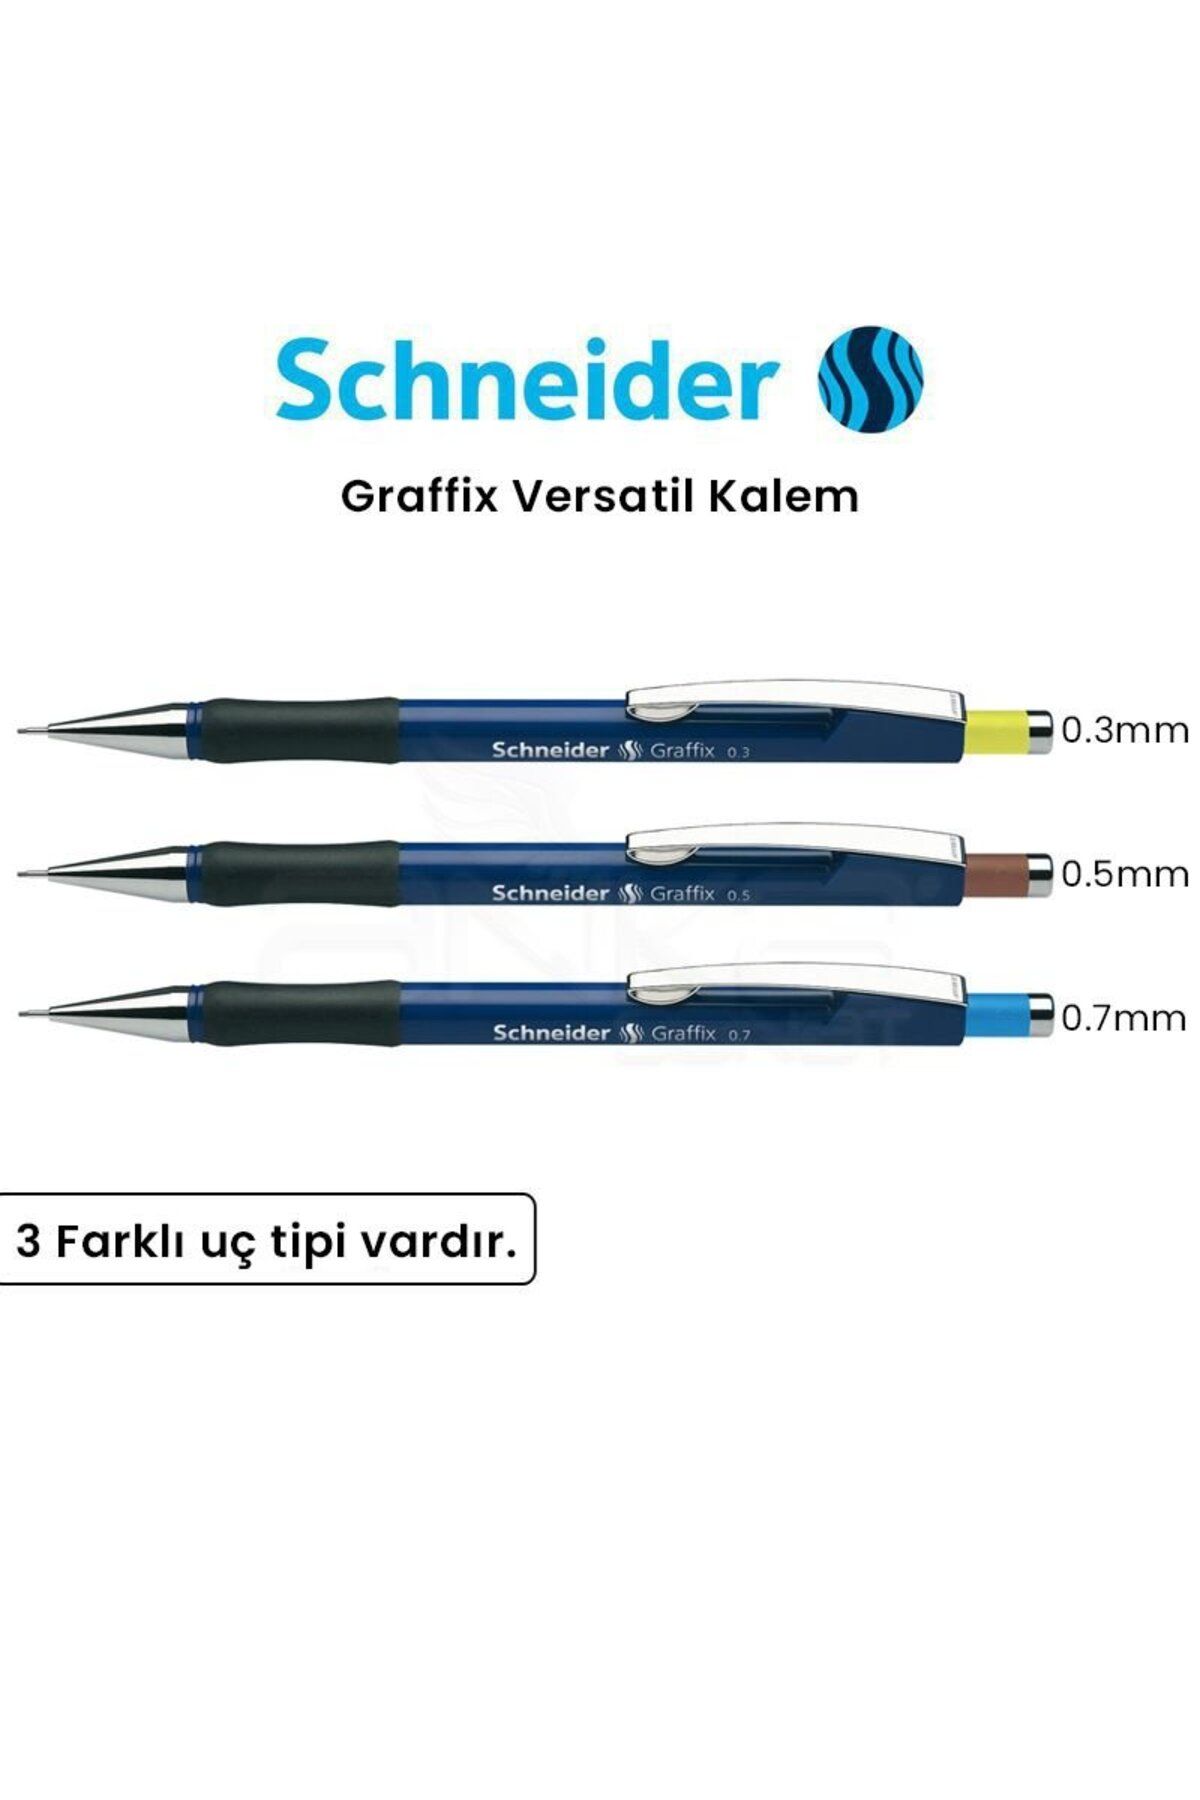 Schneider Graffix Versatil Kalem